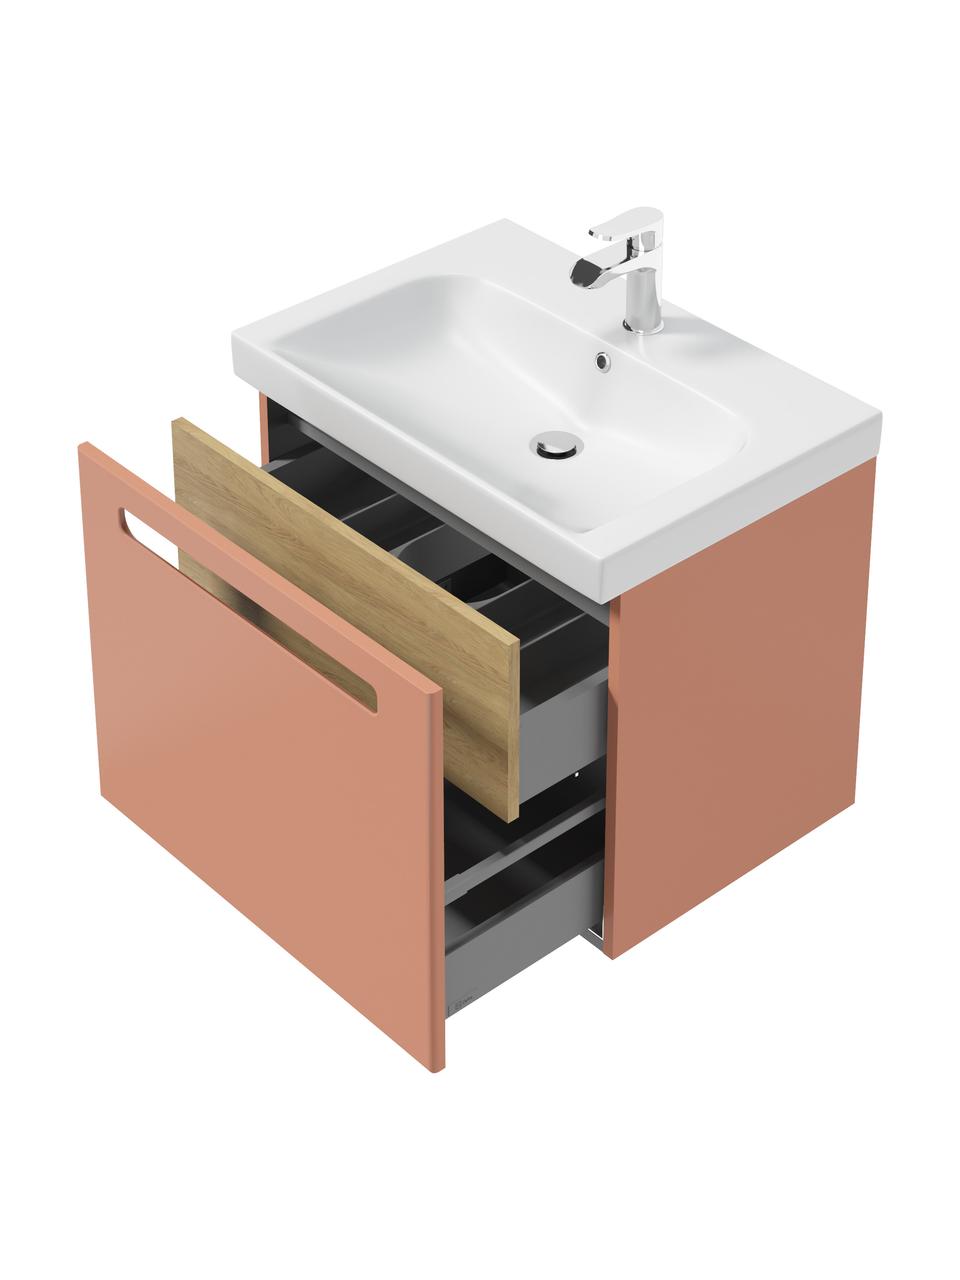 Waschtisch Senso mit Unterschrank, in verschiedenen Größen, Spanplatte,MDF, Terrakotta, B 58 x H 50 cm